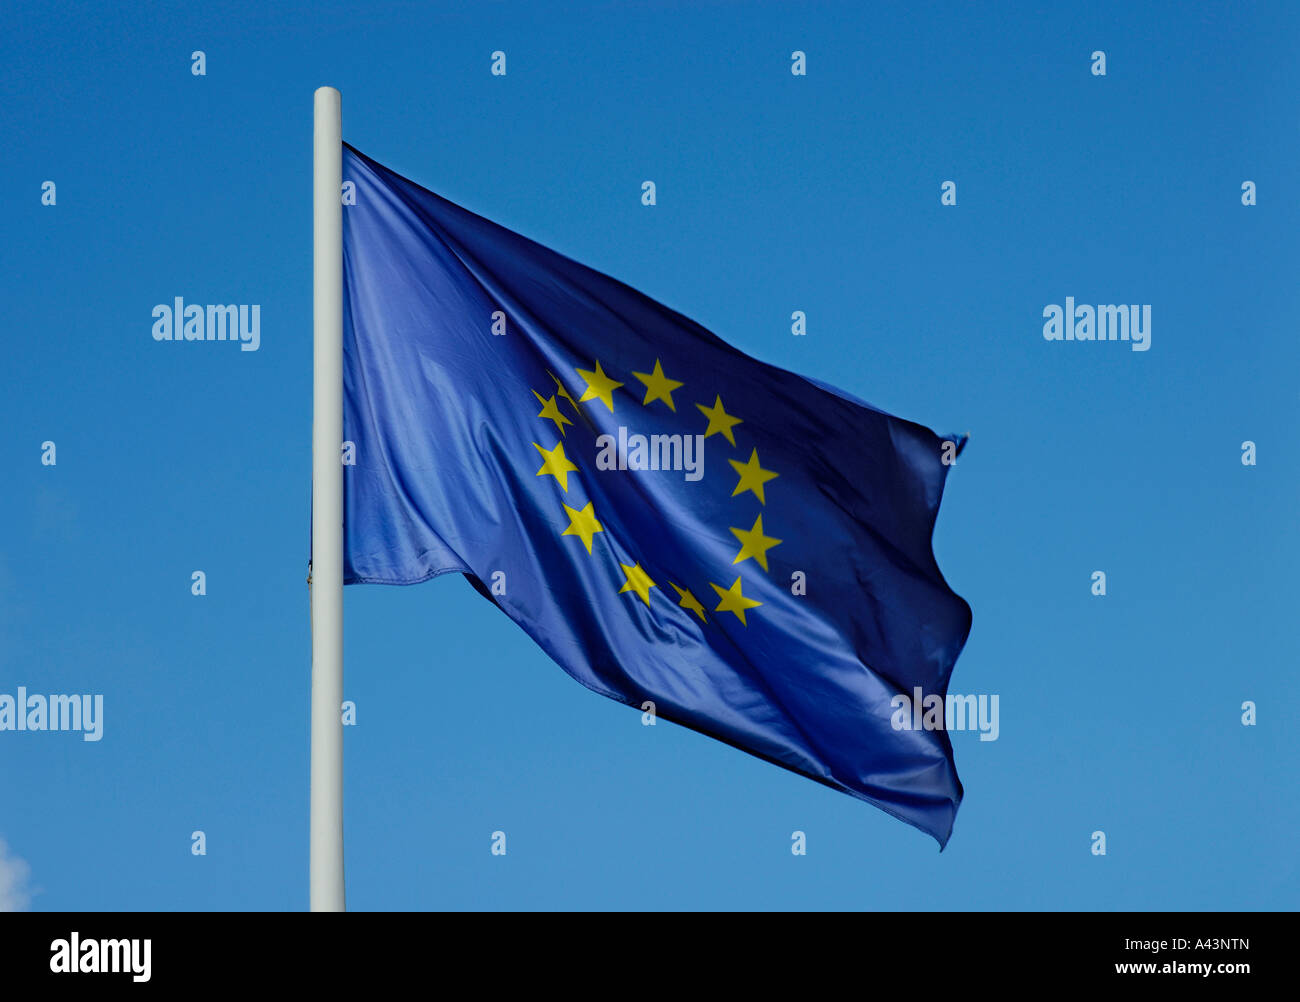 EUROPEAN UNION FLAG Stock Photo